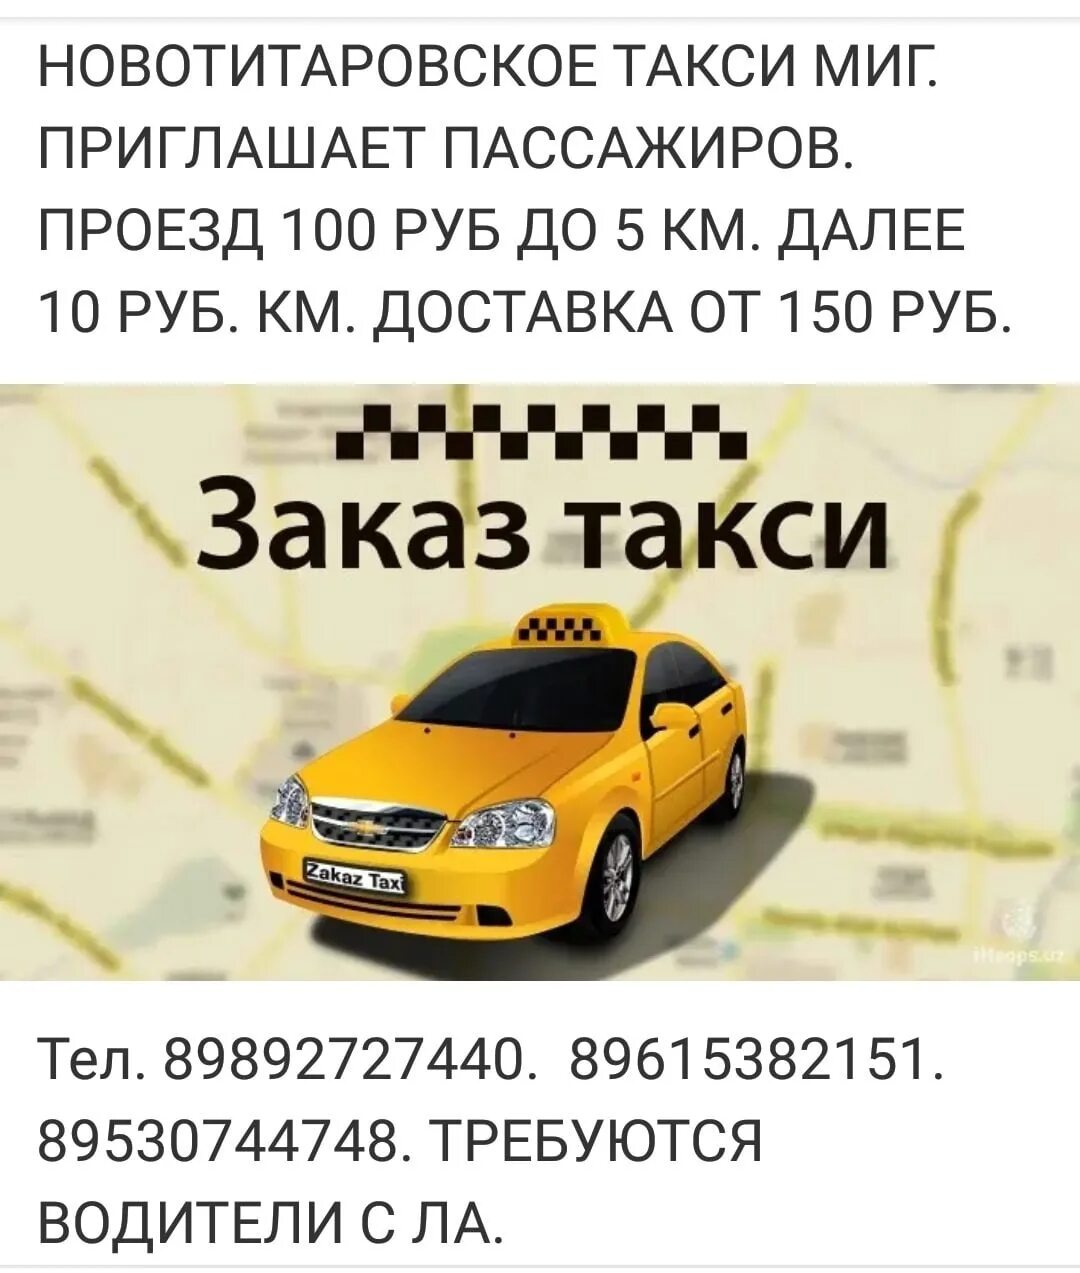 Закажи такси. Такси Динская. Такси Новотитаровская. Такси миг.